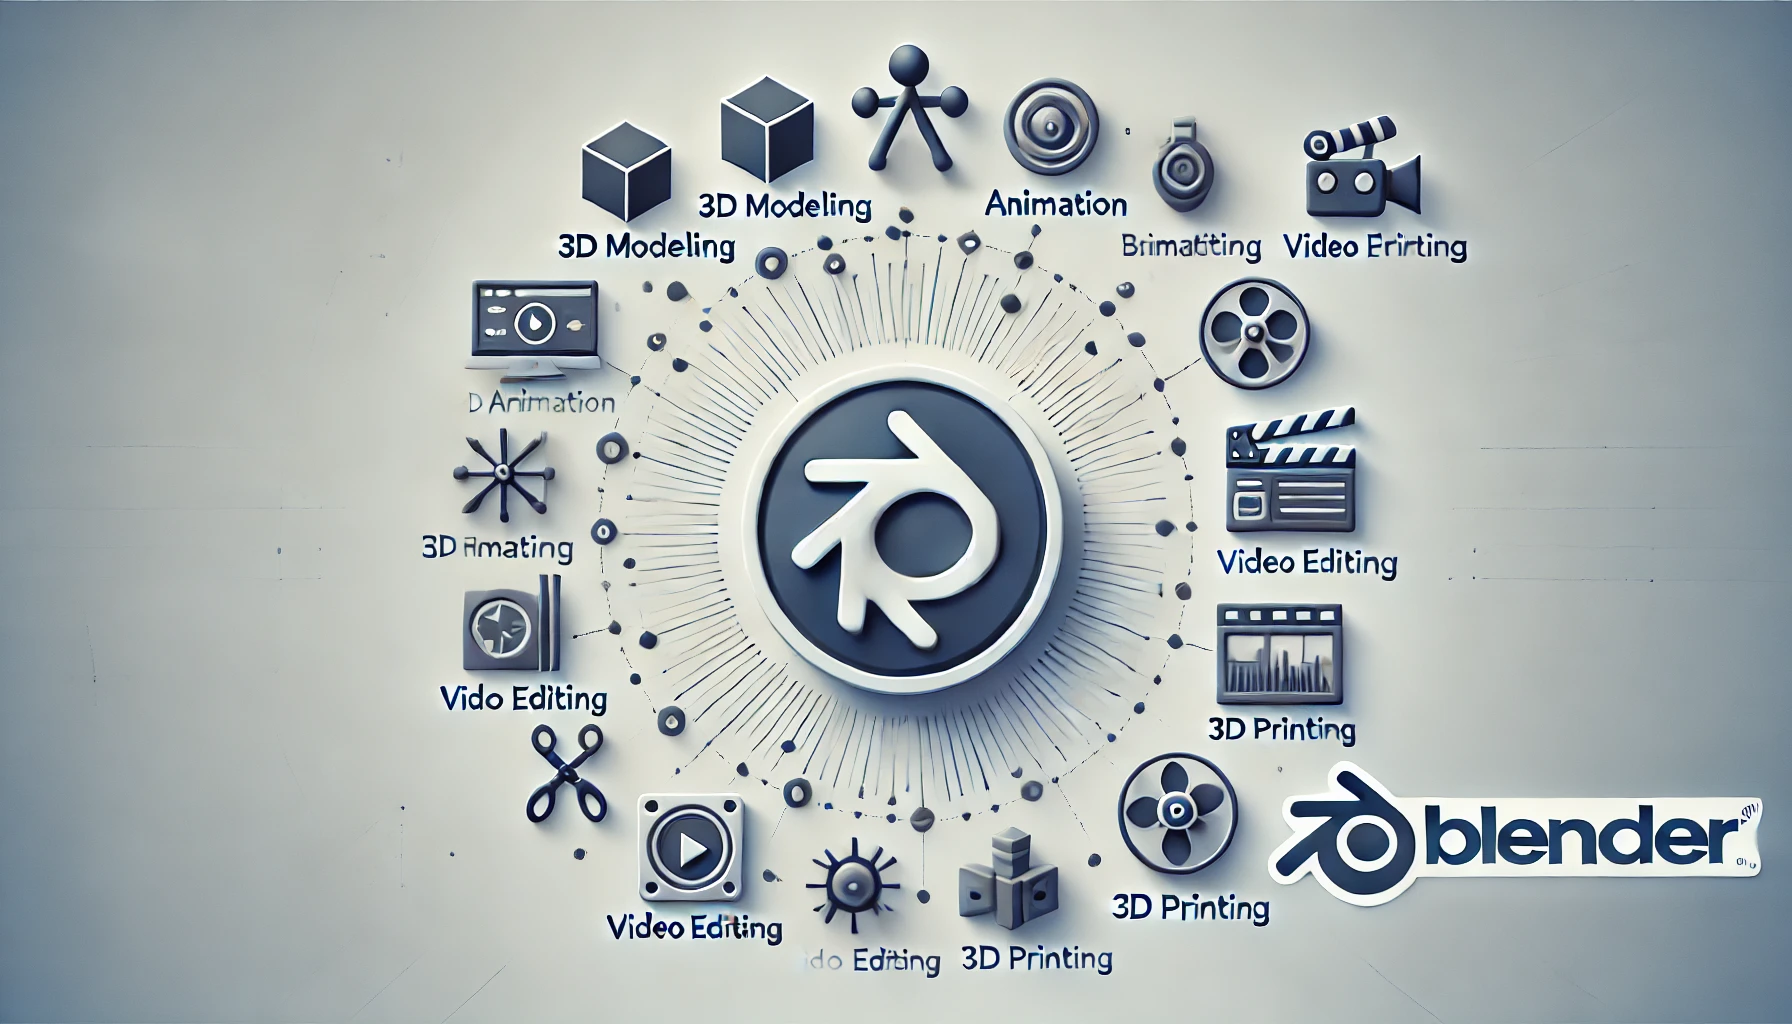 Ilustración de las capacidades de Blender con su logo en el centro y varios íconos alrededor que representan modelado 3D, animación, edición de vídeo y exportación para impresión 3D.